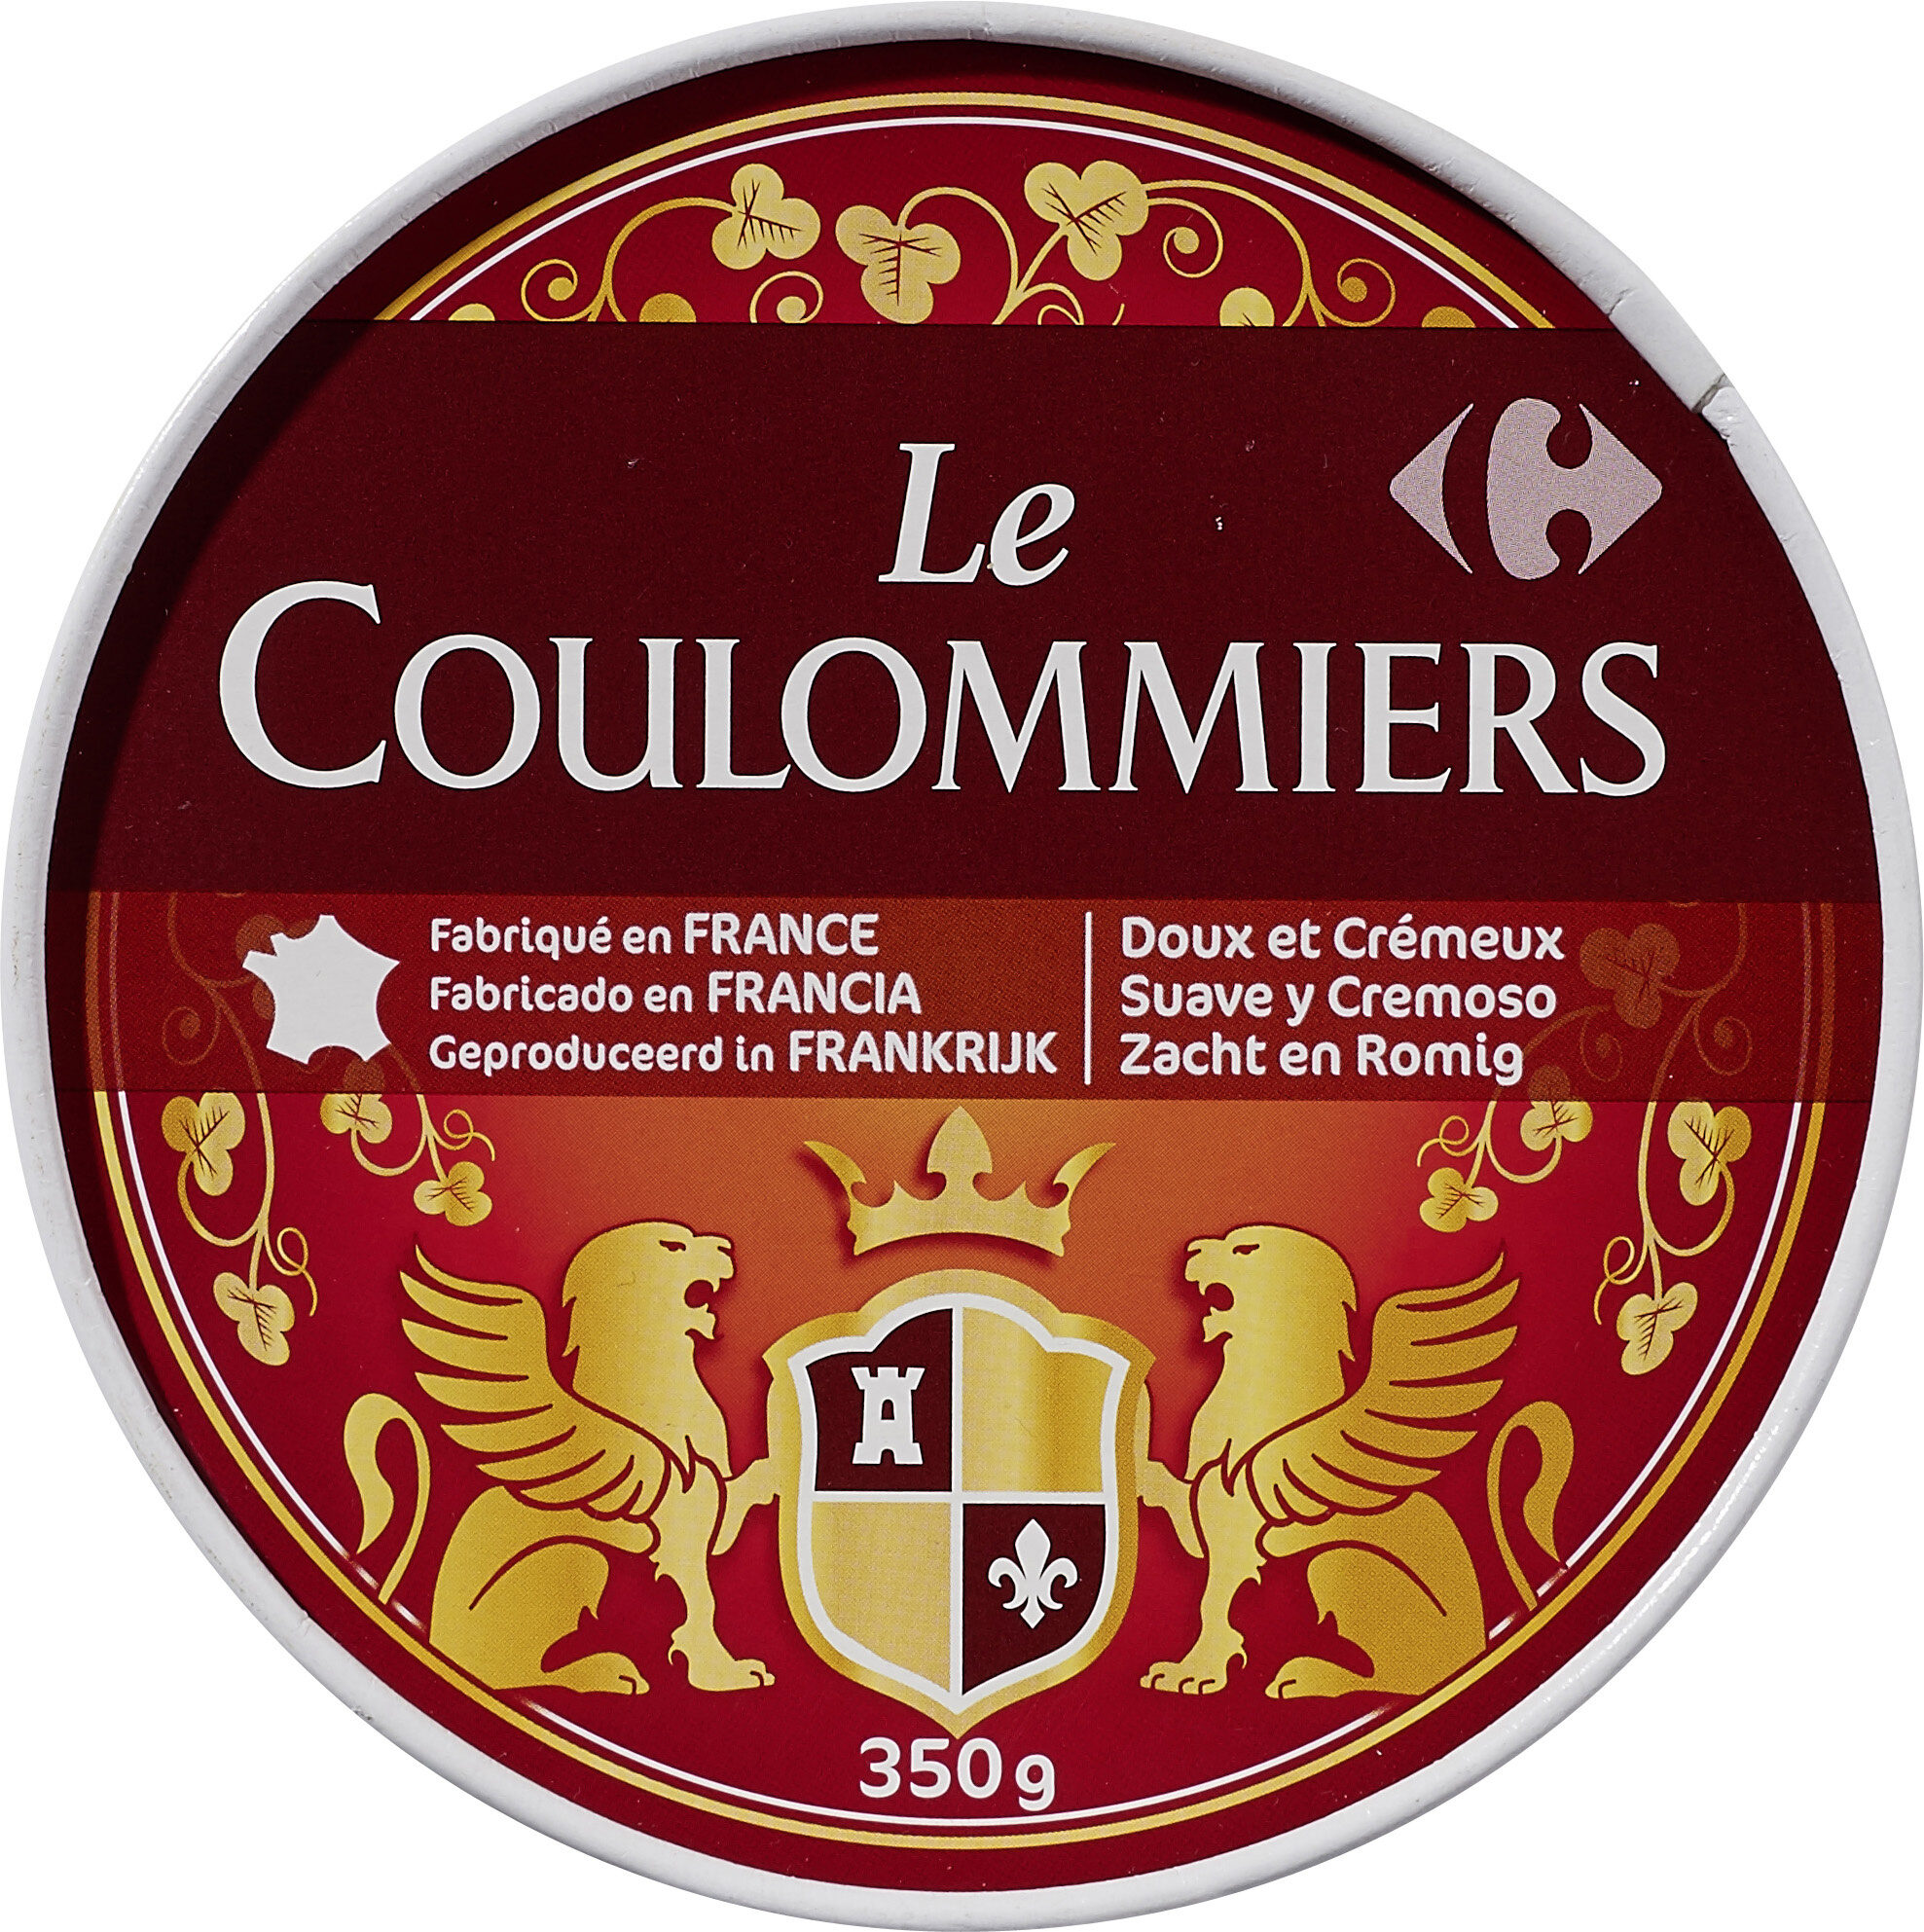 Le Coulommiers - Produit